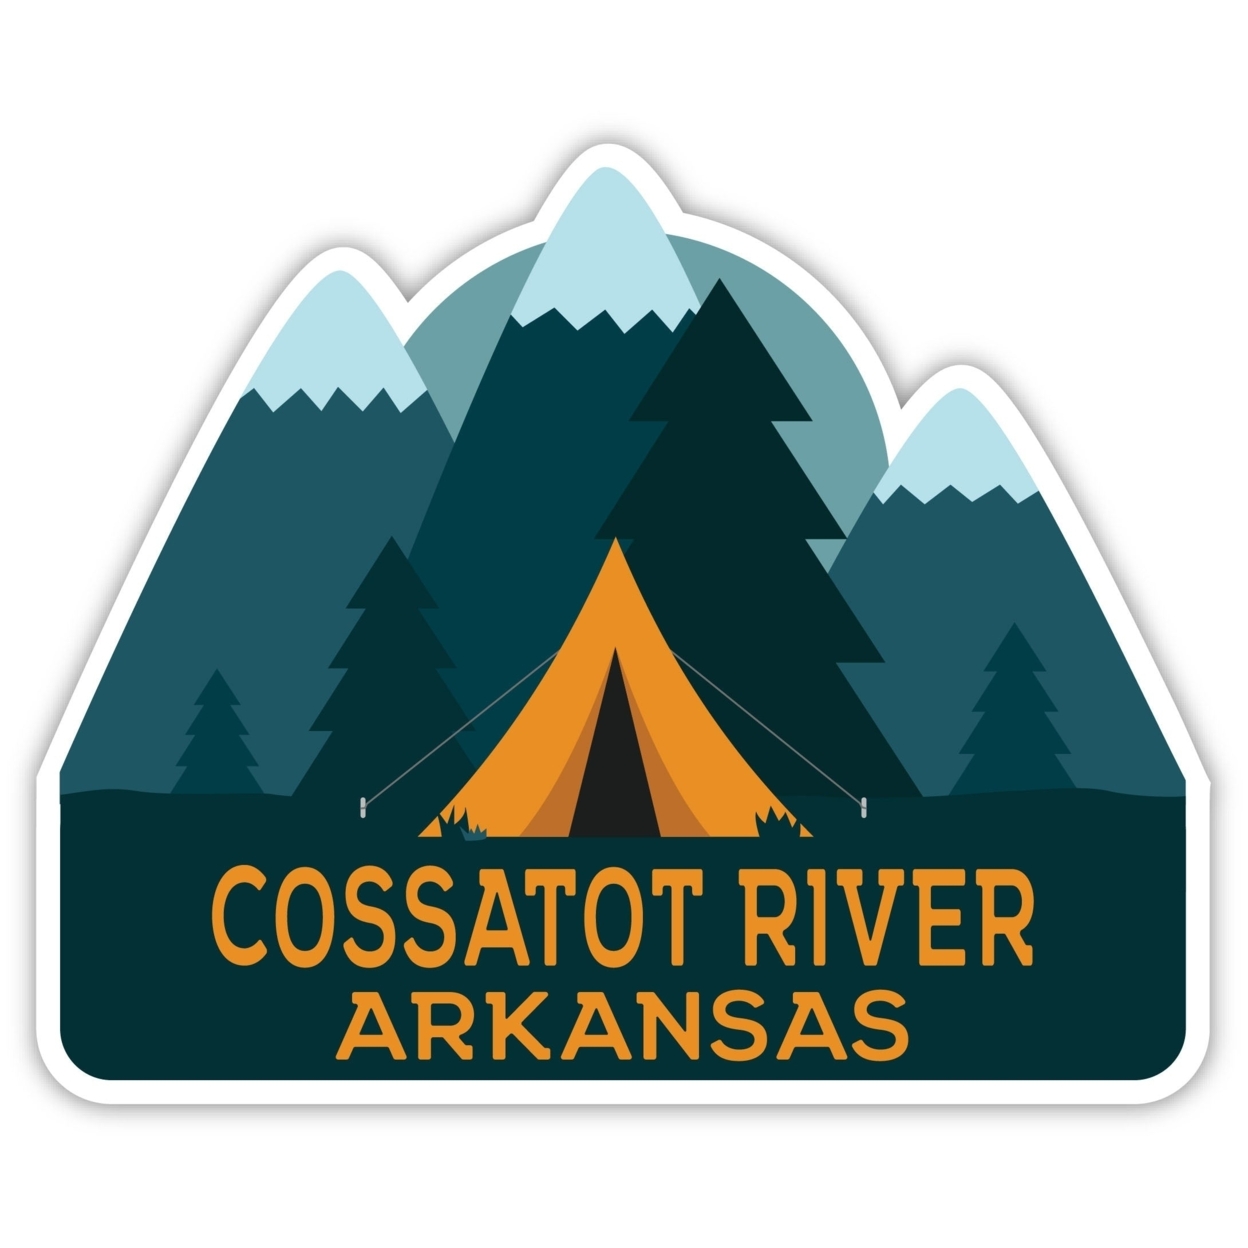 Cossatot River Arkansas Souvenir Decorative Stickers (Choose Theme And Size) - Single Unit, 4-Inch, Tent